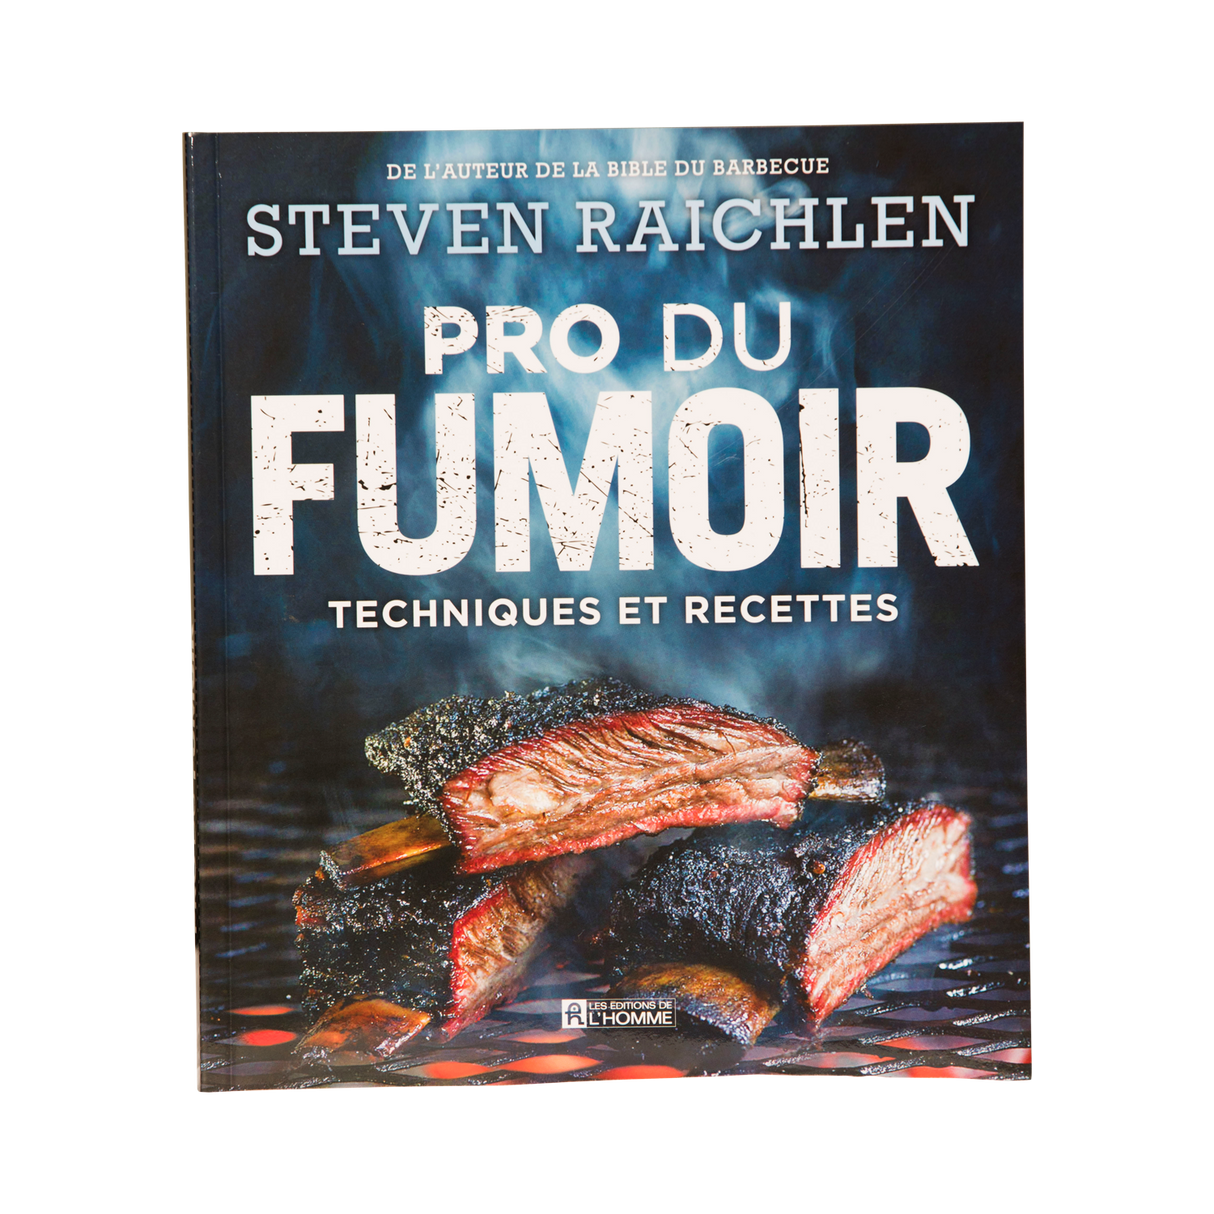 Livre Steven Raichlen - Pro du fumoir - Techniques et Recettes par Steven Raichlen vendu par BBQQUEBEC.com